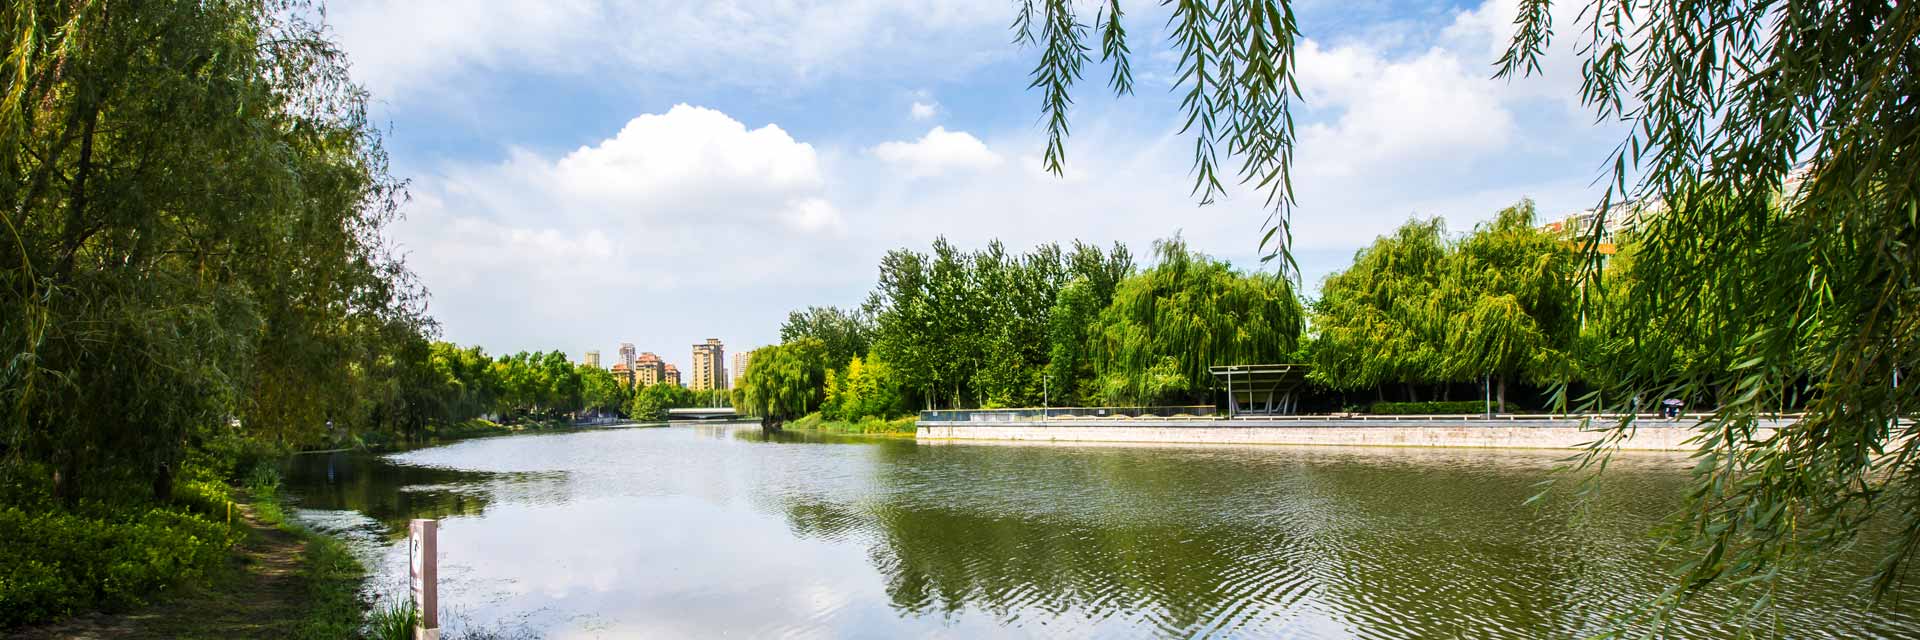 李村河生态系统构建工程